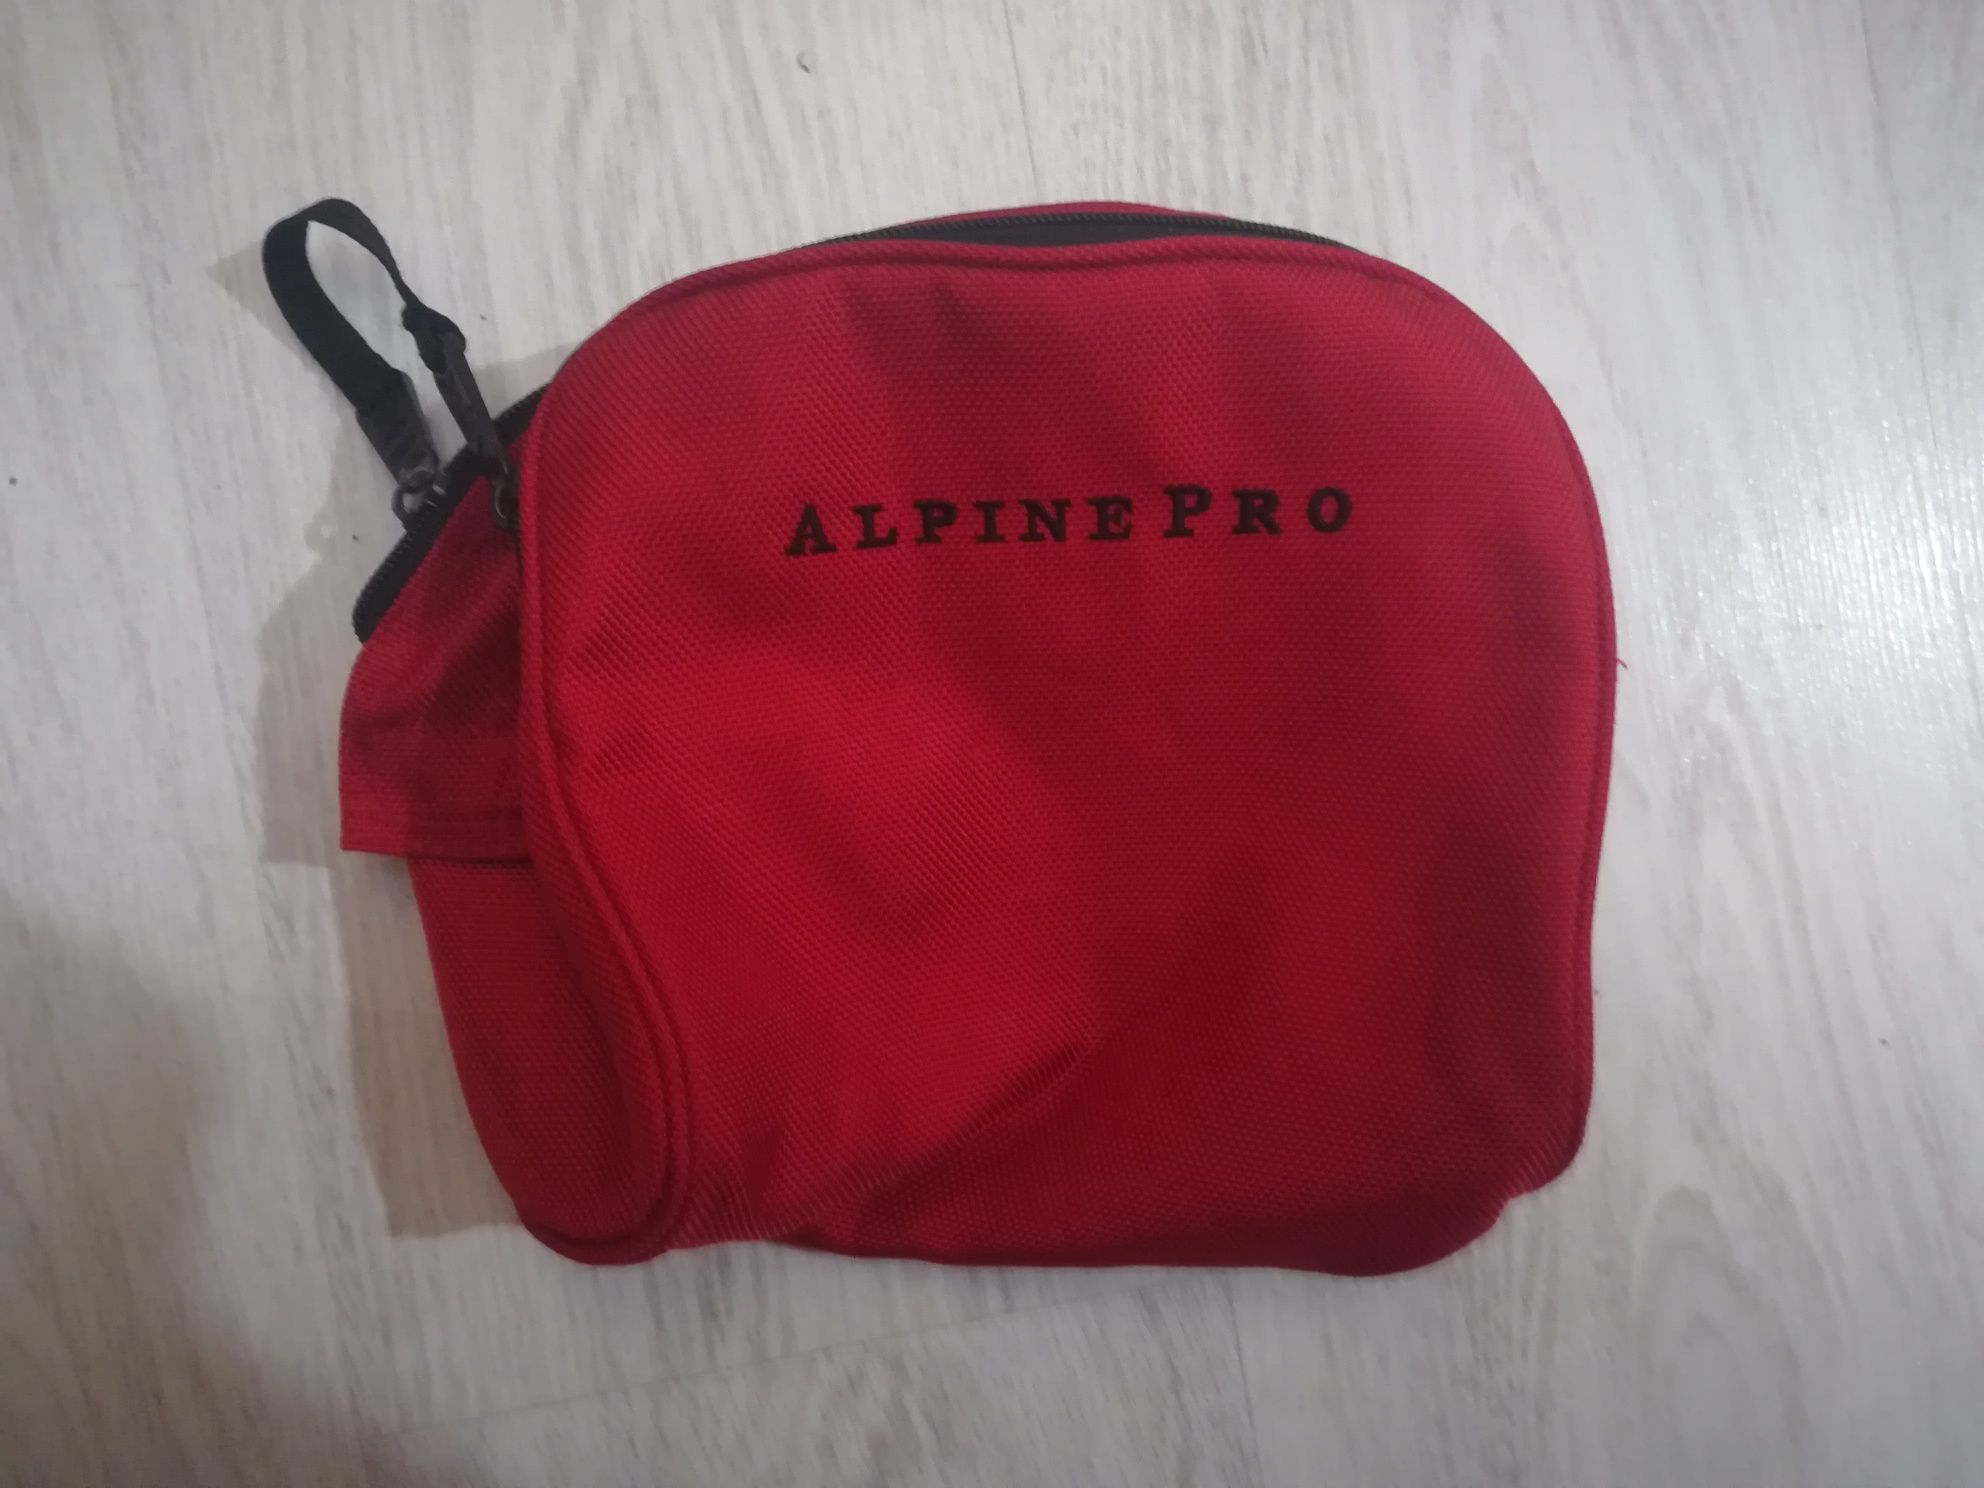 Kosmetyczka Alpine Pro